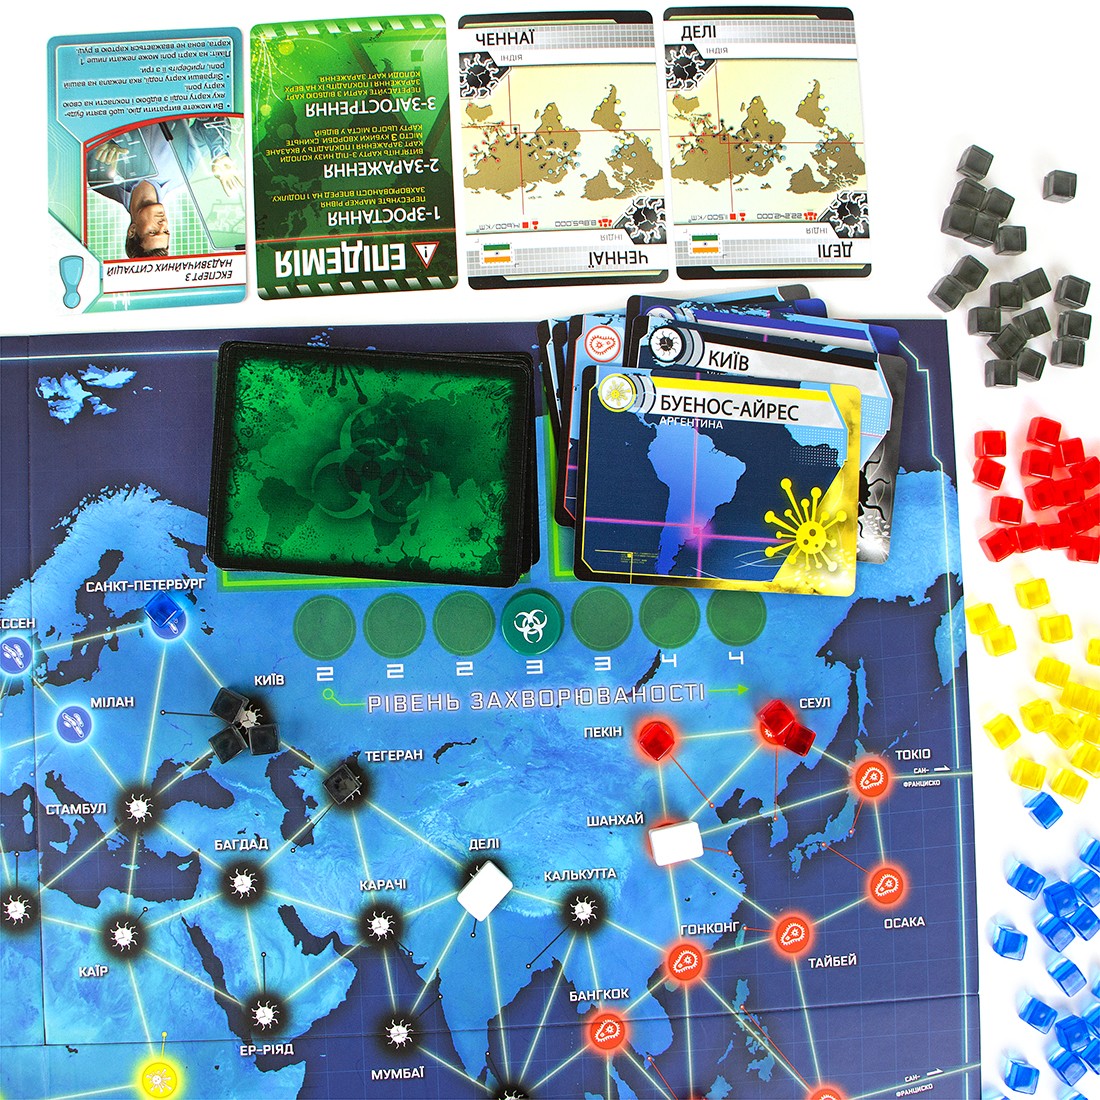 Настільна гра Пандемія (Pandemic), бренду Ігромаг, для 2-4 гравців, час гри < 60хв. - 8 - KUBIX 